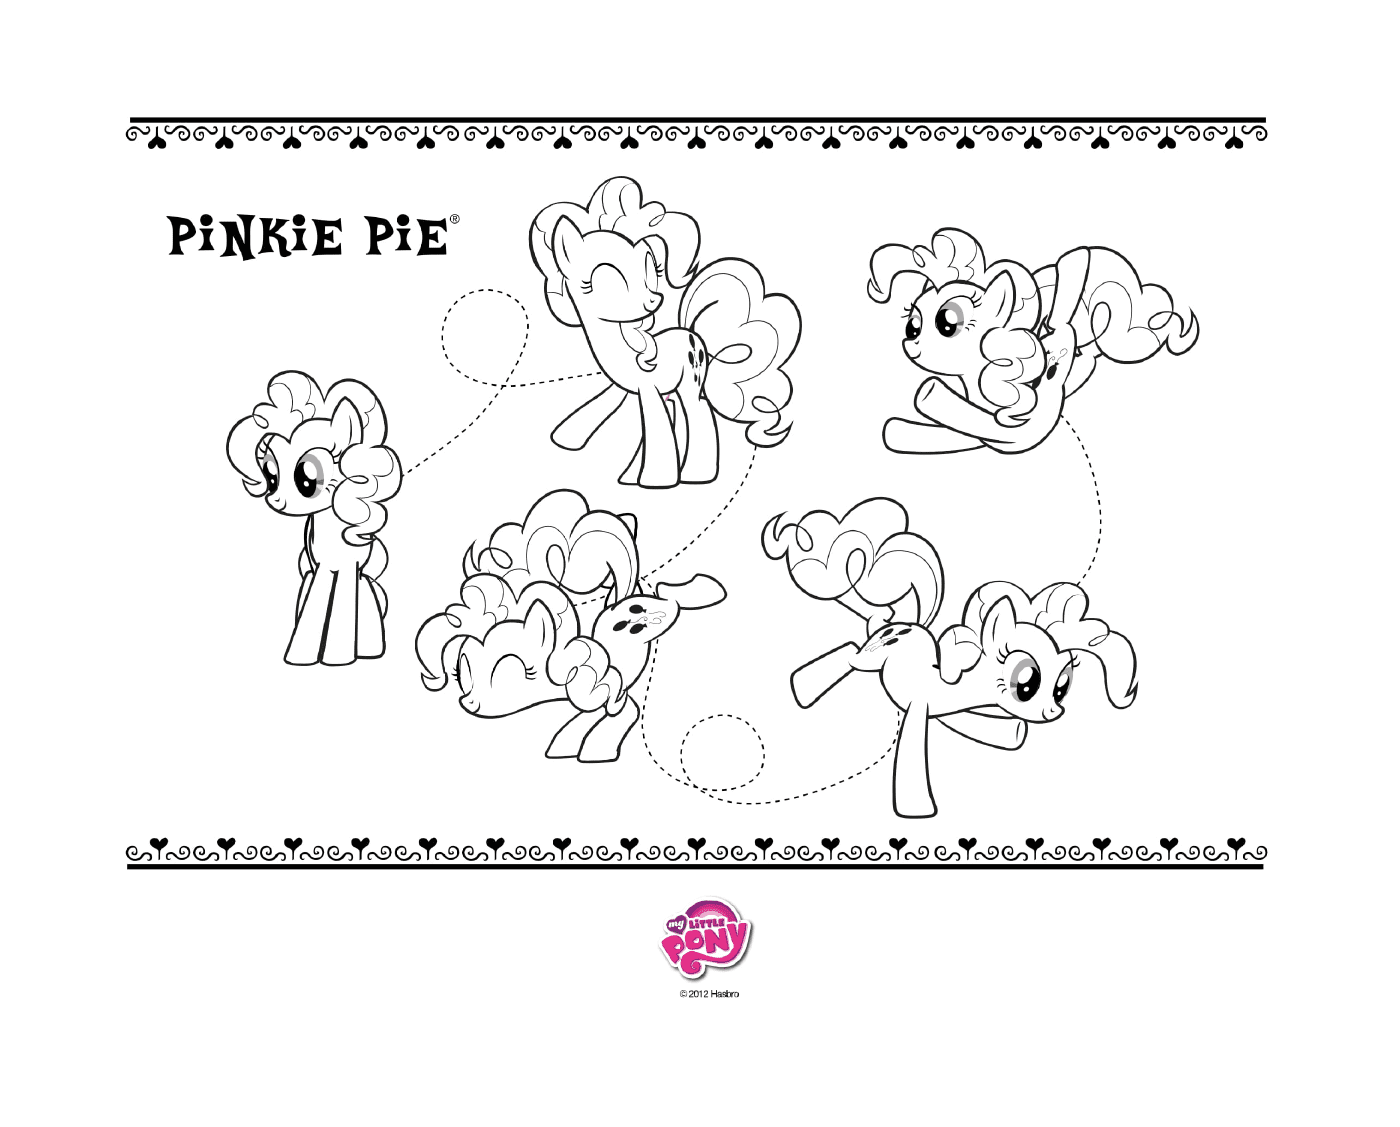   Pinkie Pie, joyeuse et colorée 